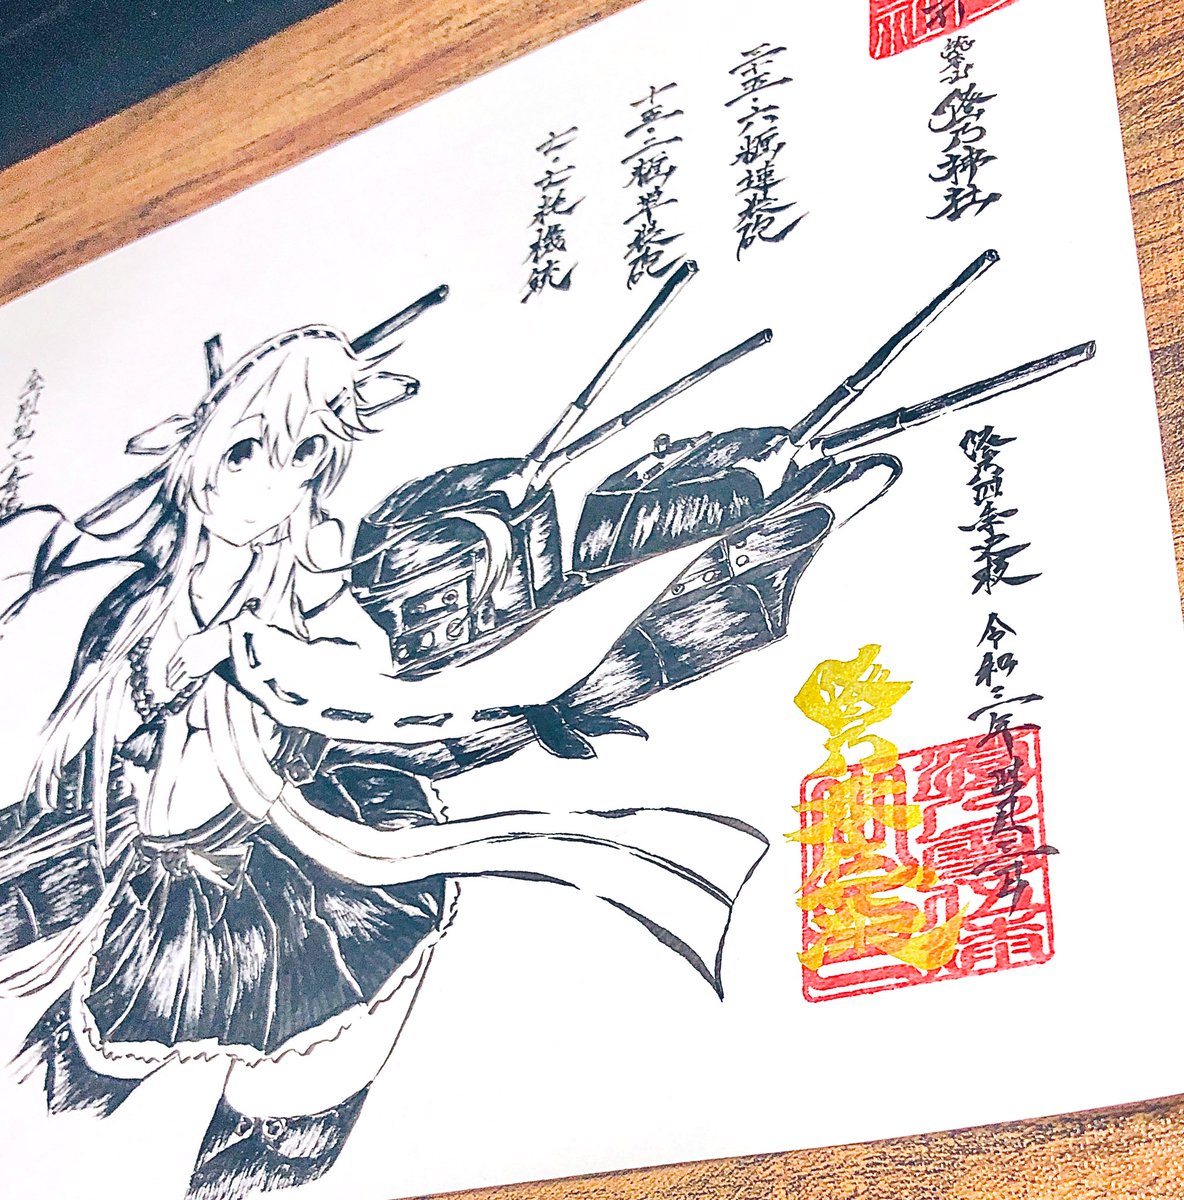 榛名ちゃ……
がんばって描いた……!
#澄乃神社 